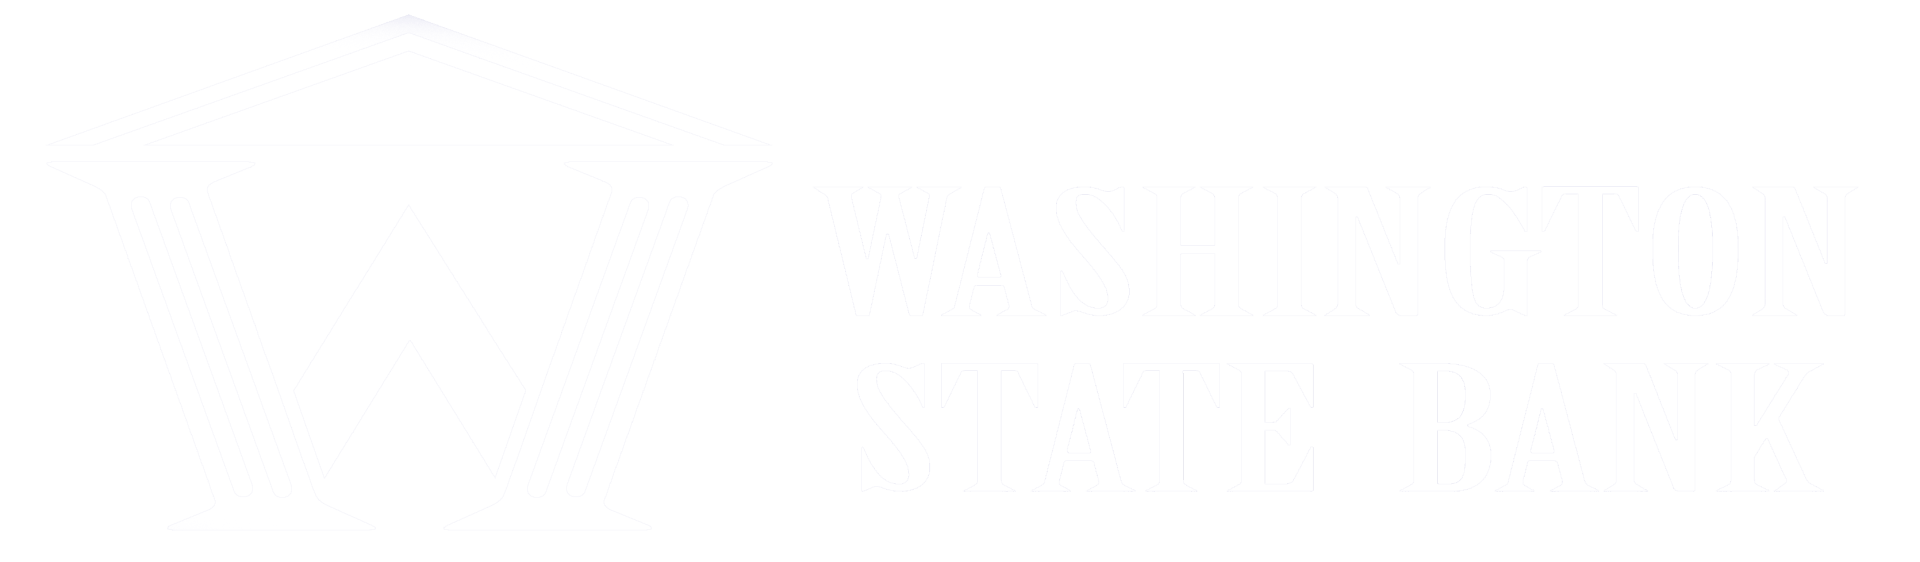 Washington state bank logo